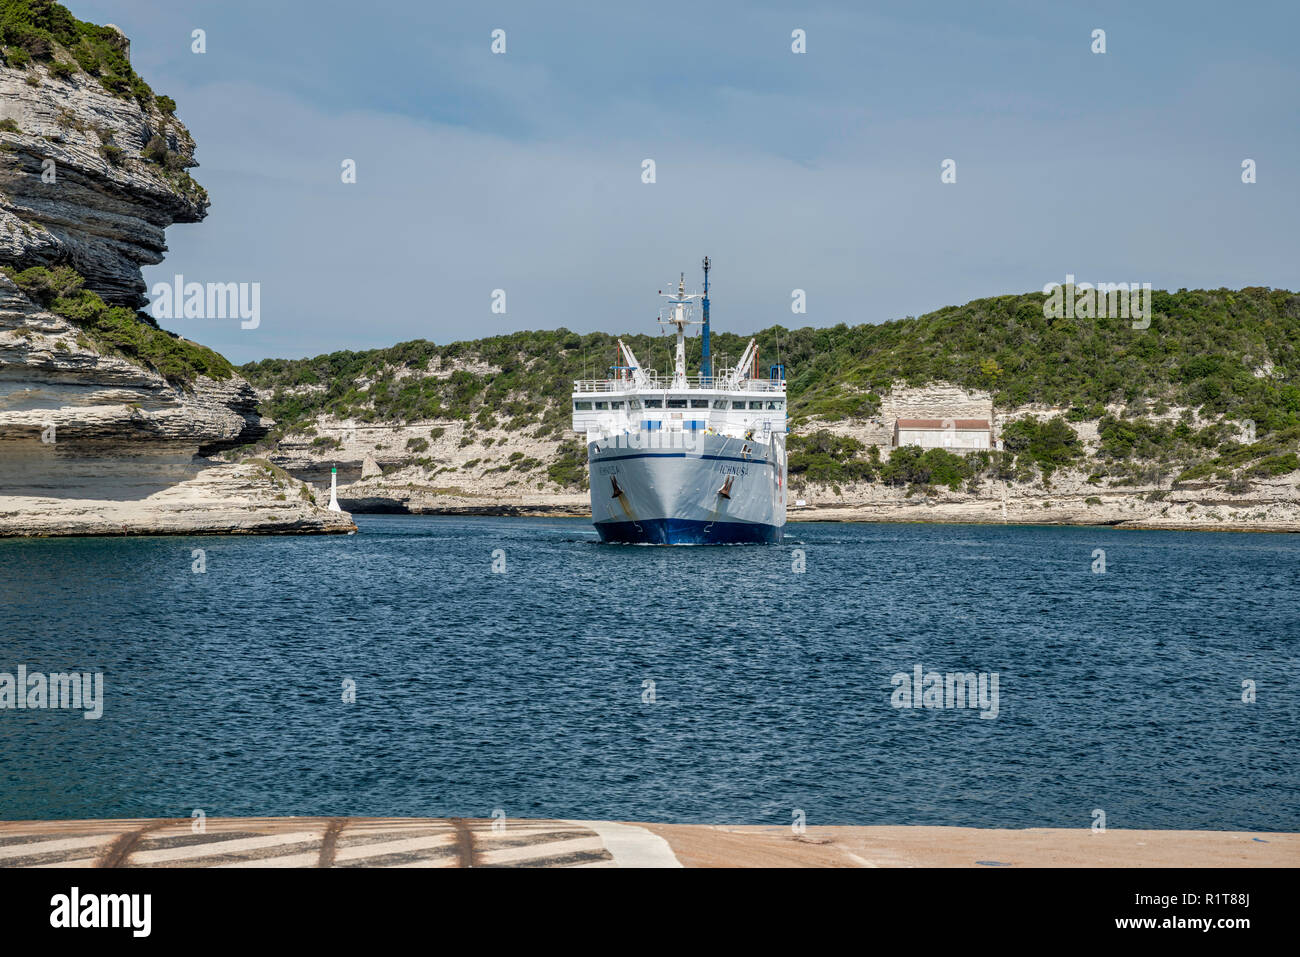 MS Ichnusa ferry procedente de Santa Teresa di Gallura, Cerdeña, acercándose a la terminal en el puerto de Bonifacio, Corse du Sud, Córcega, Francia Foto de stock